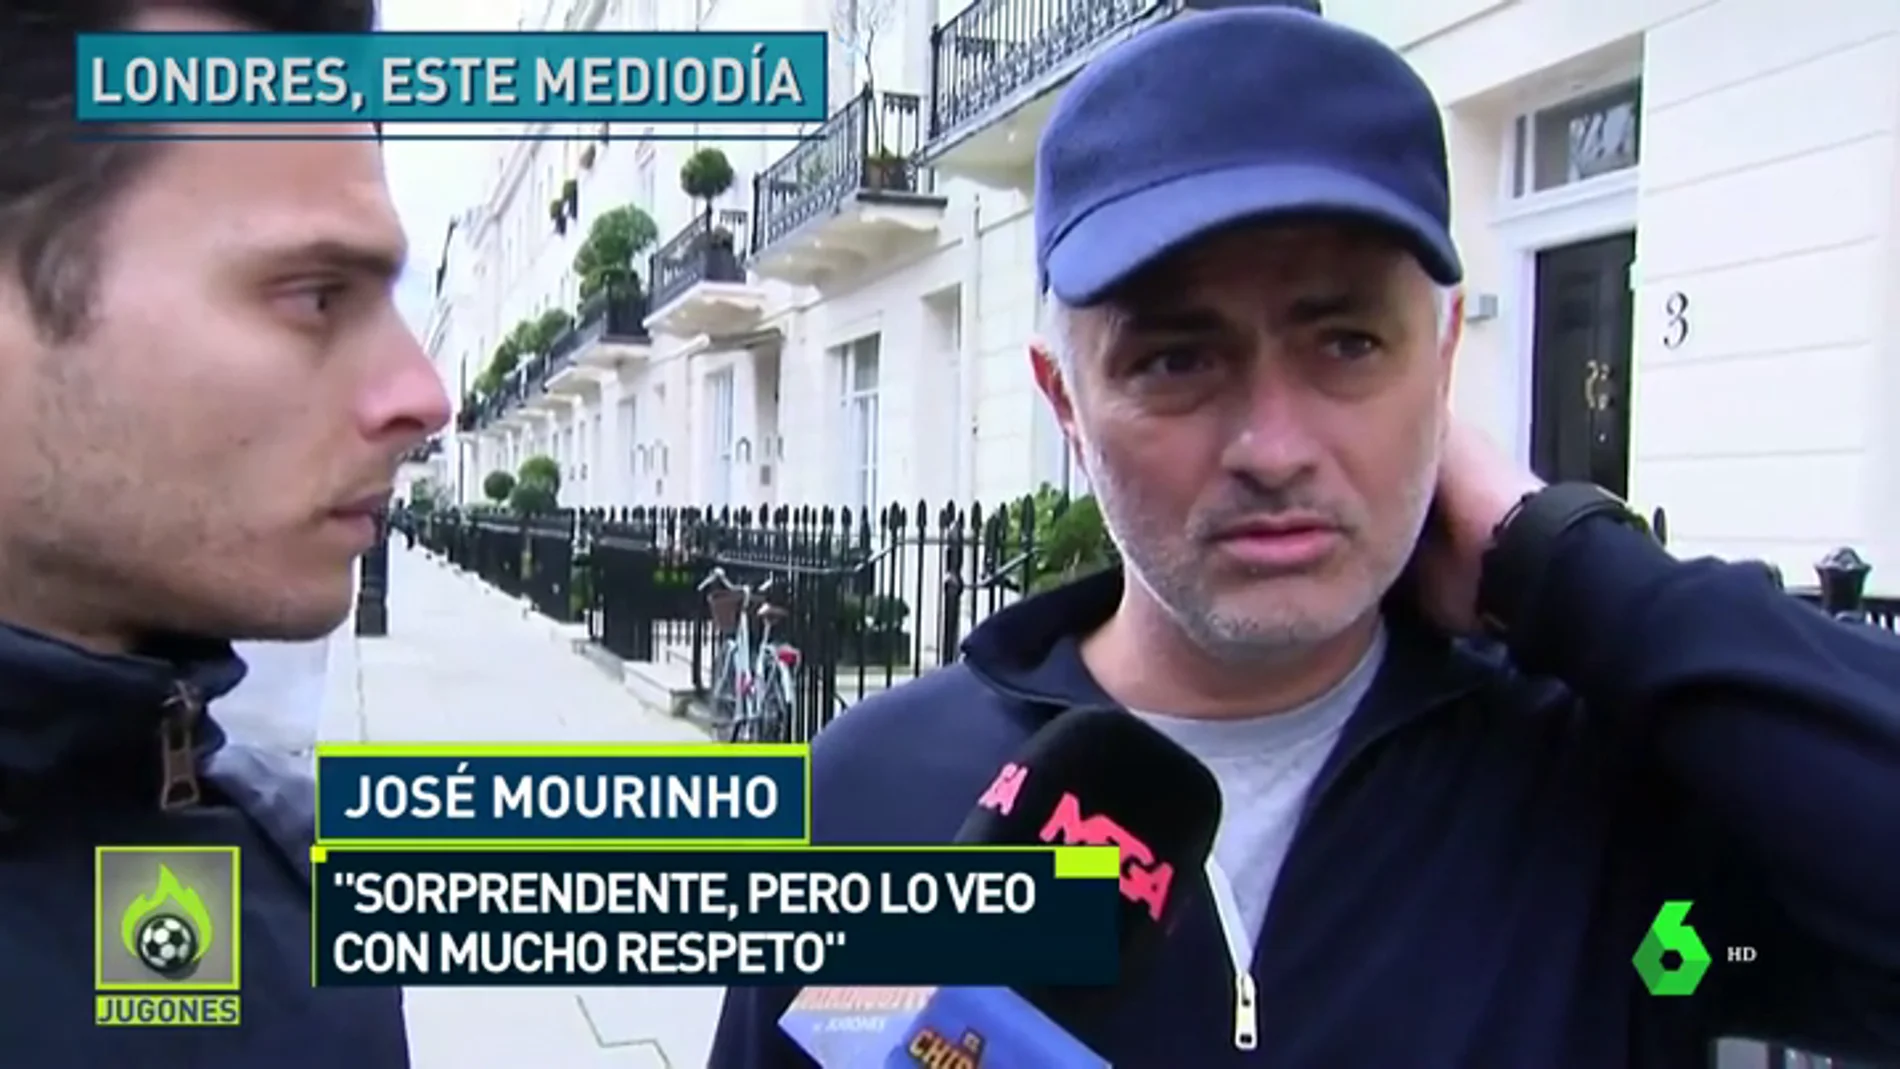 José Mourinho, en exclusiva para Jugones: "